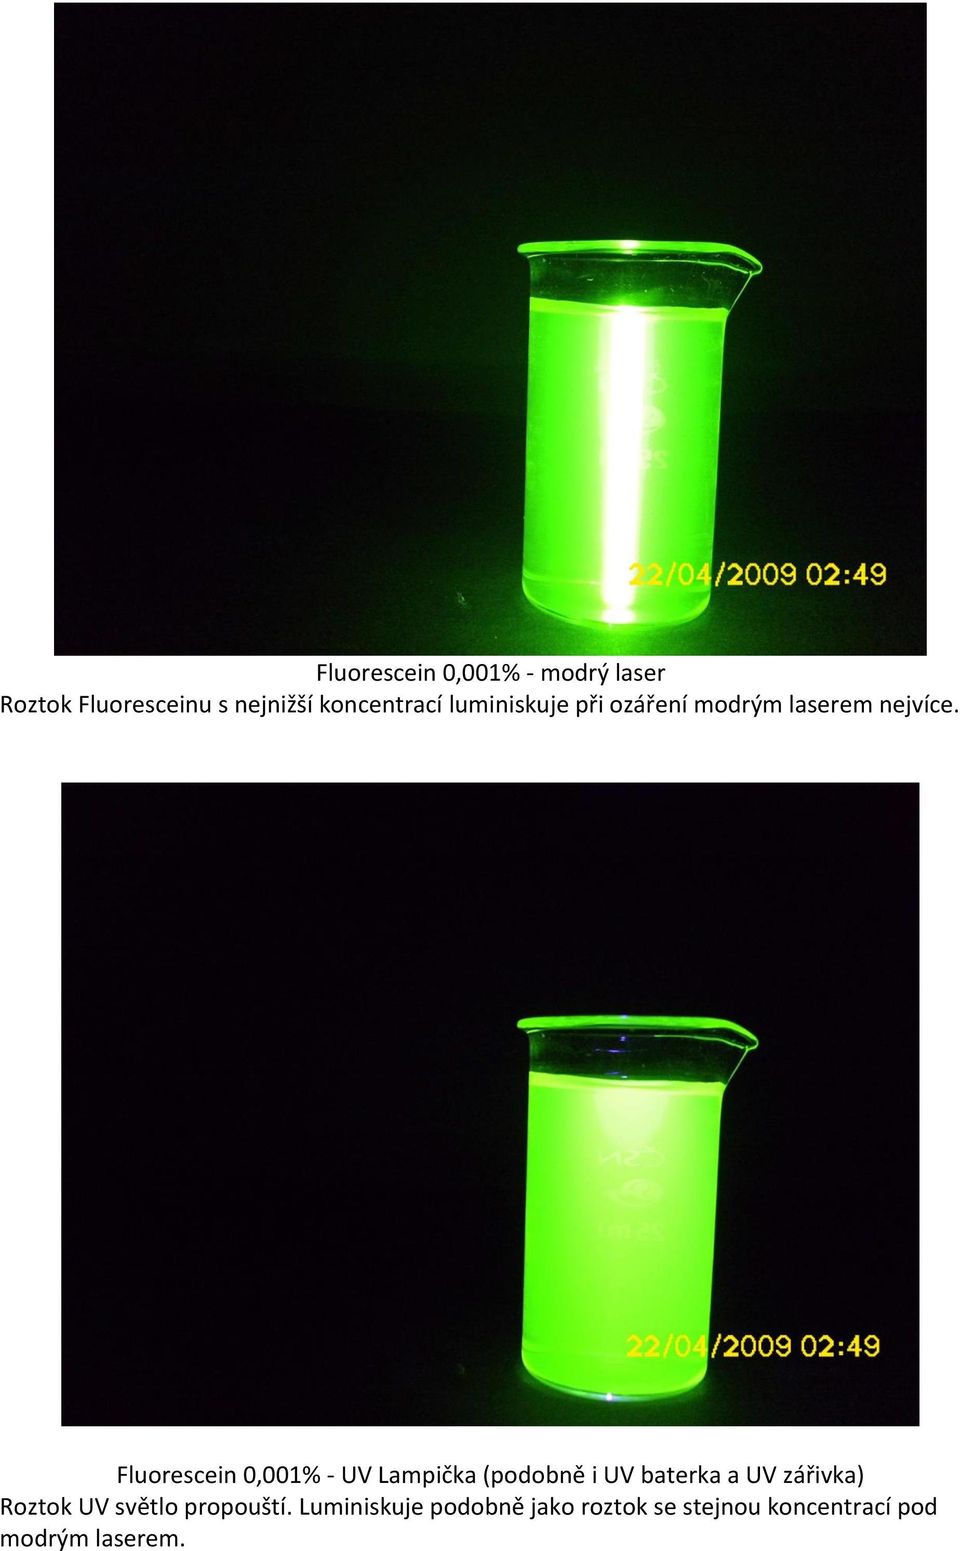 Fluorescein 0,001% - UV Lampička (podobně i UV baterka a UV zářivka)